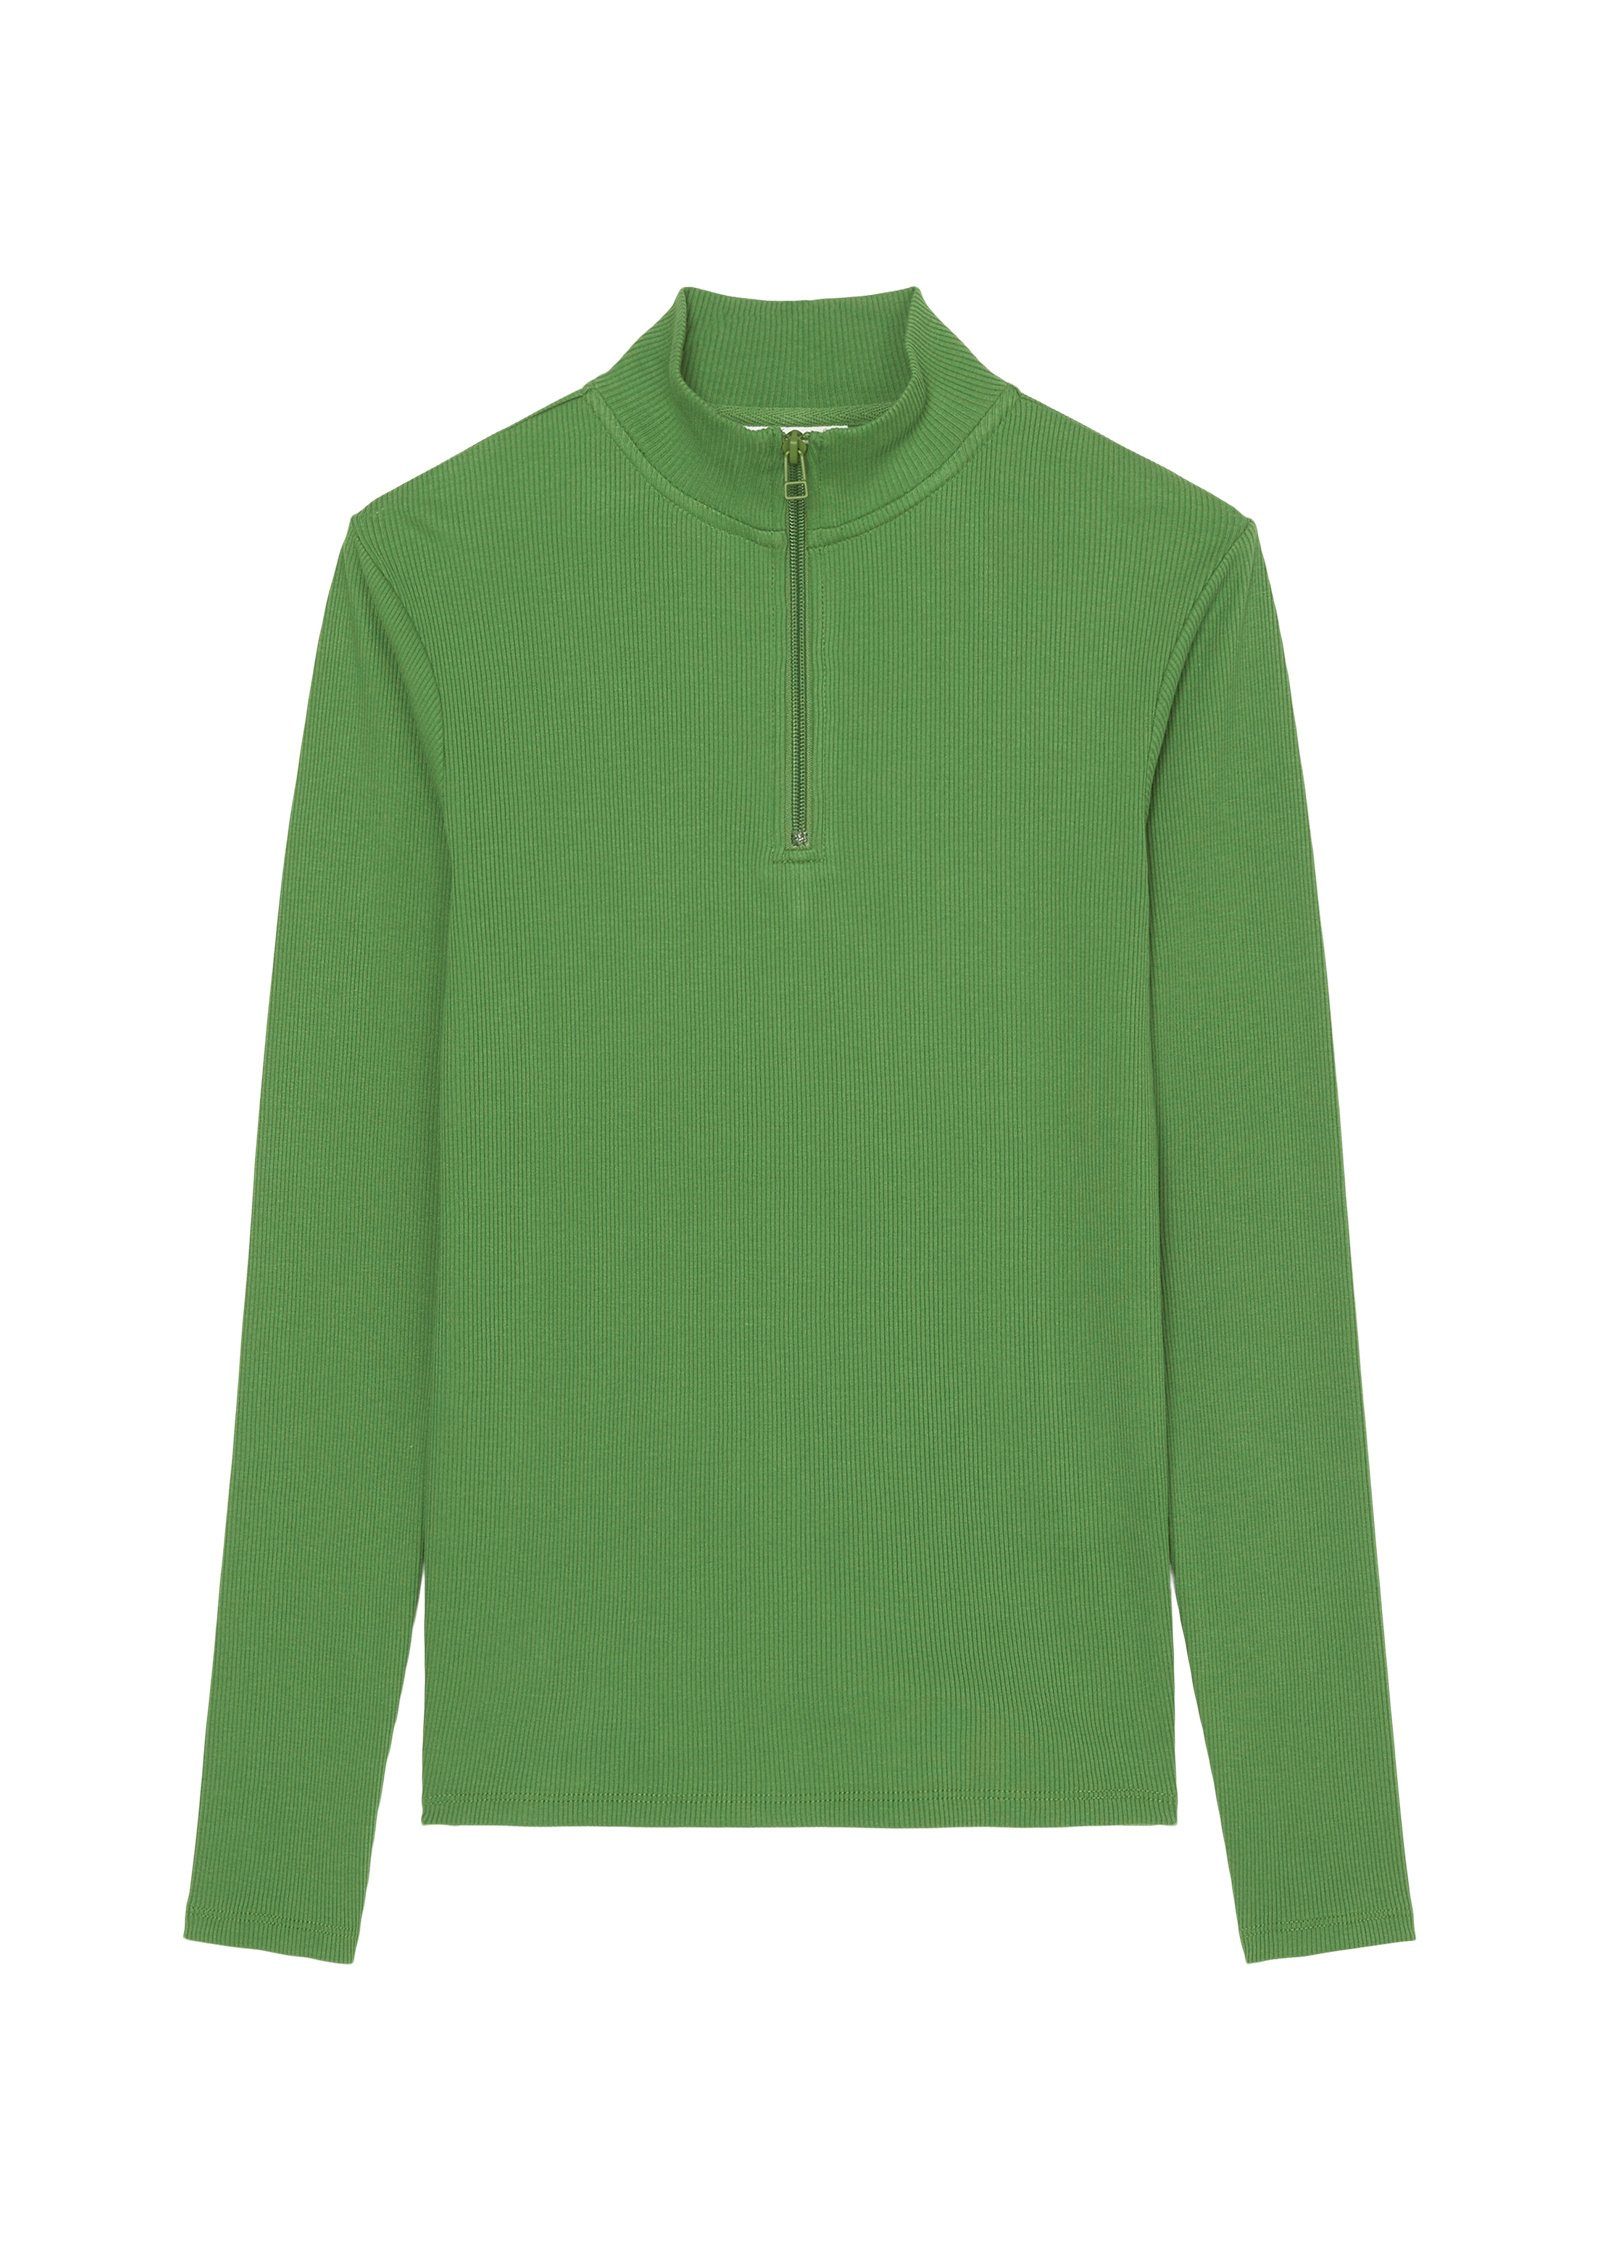 Marc O'Polo DENIM aus Langarmshirt softem grün Rib-Jersey